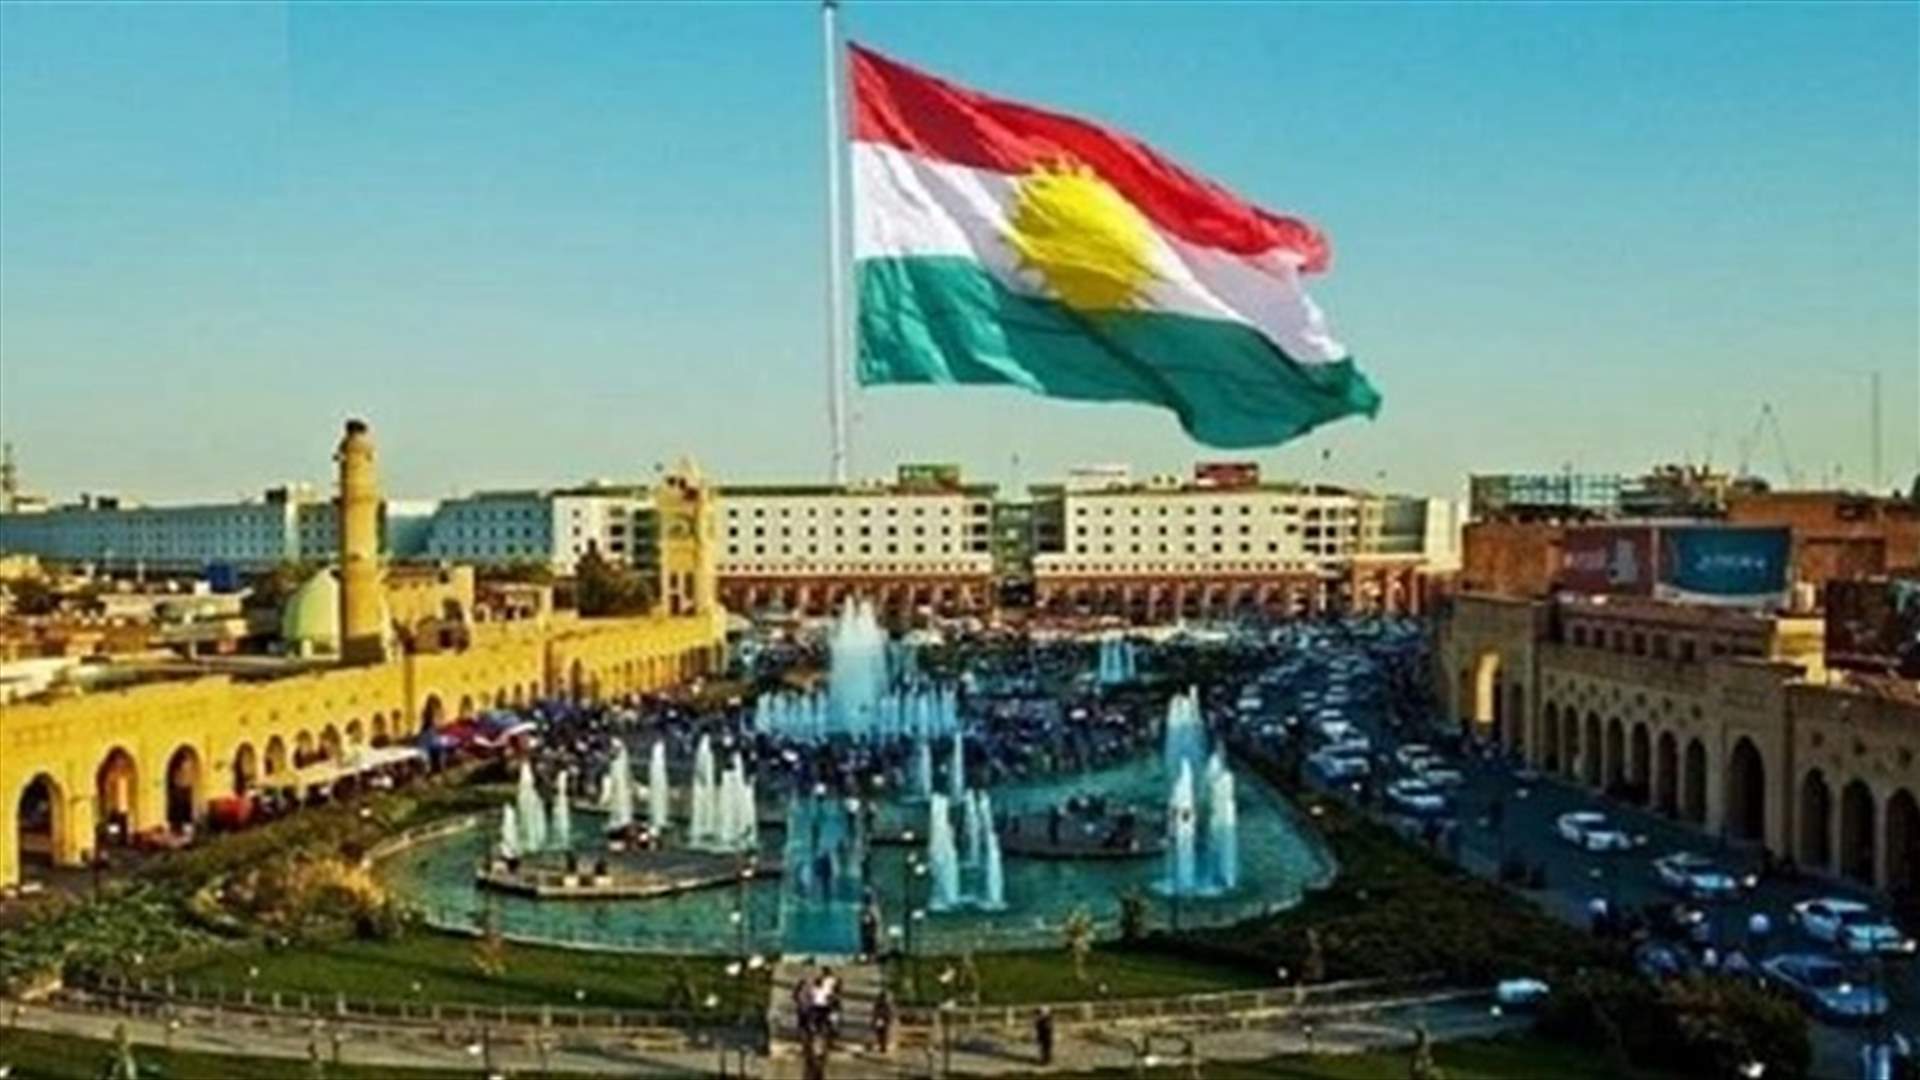 حكومة كردستان العراق تستنكر الضربات الإيرانية وتعتبرها &quot;انتهاكات غير مبررة&quot;